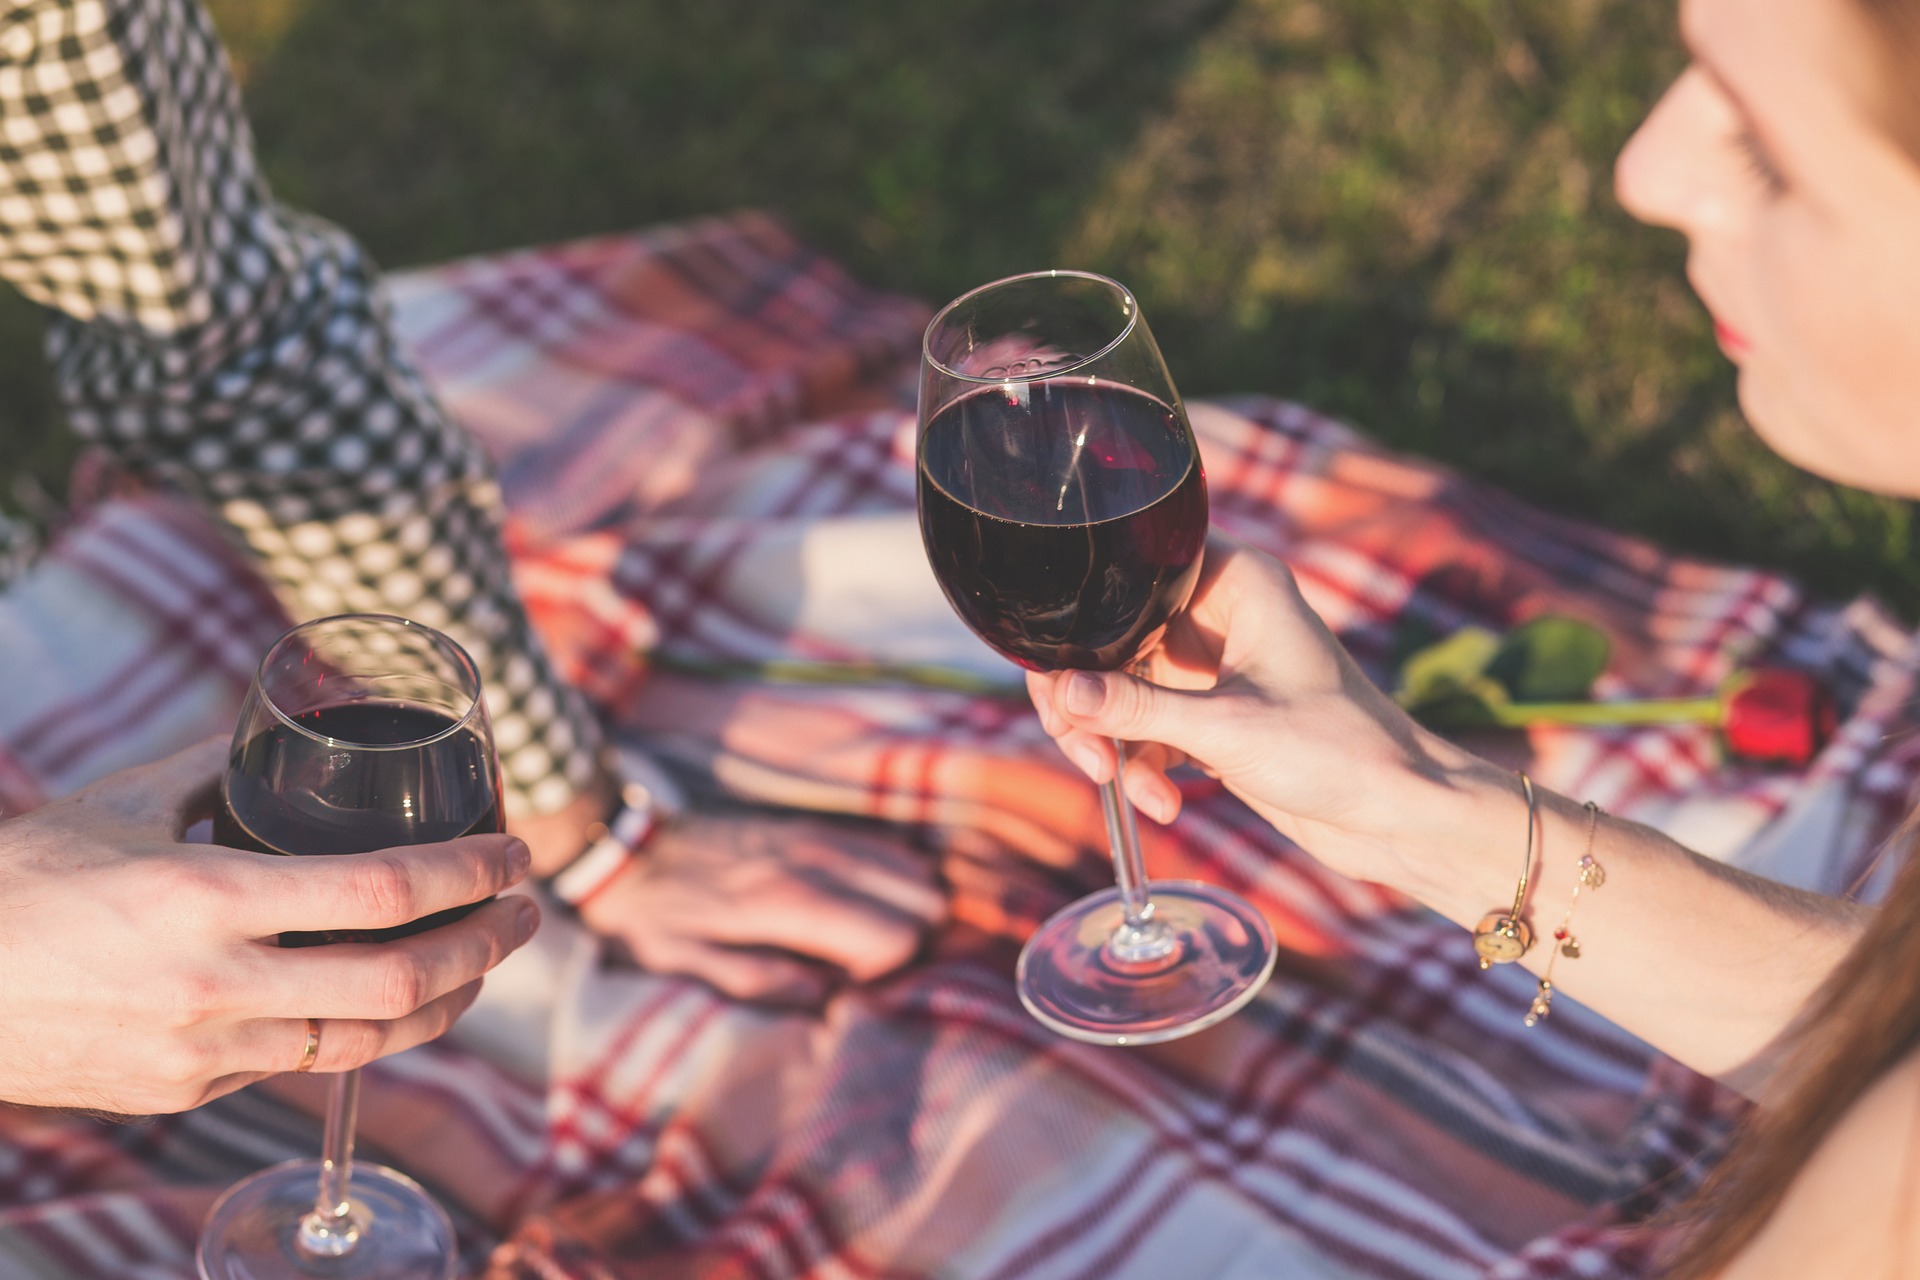 deux personnes font un pique-nique dans une prairie en buvant du vin rouge